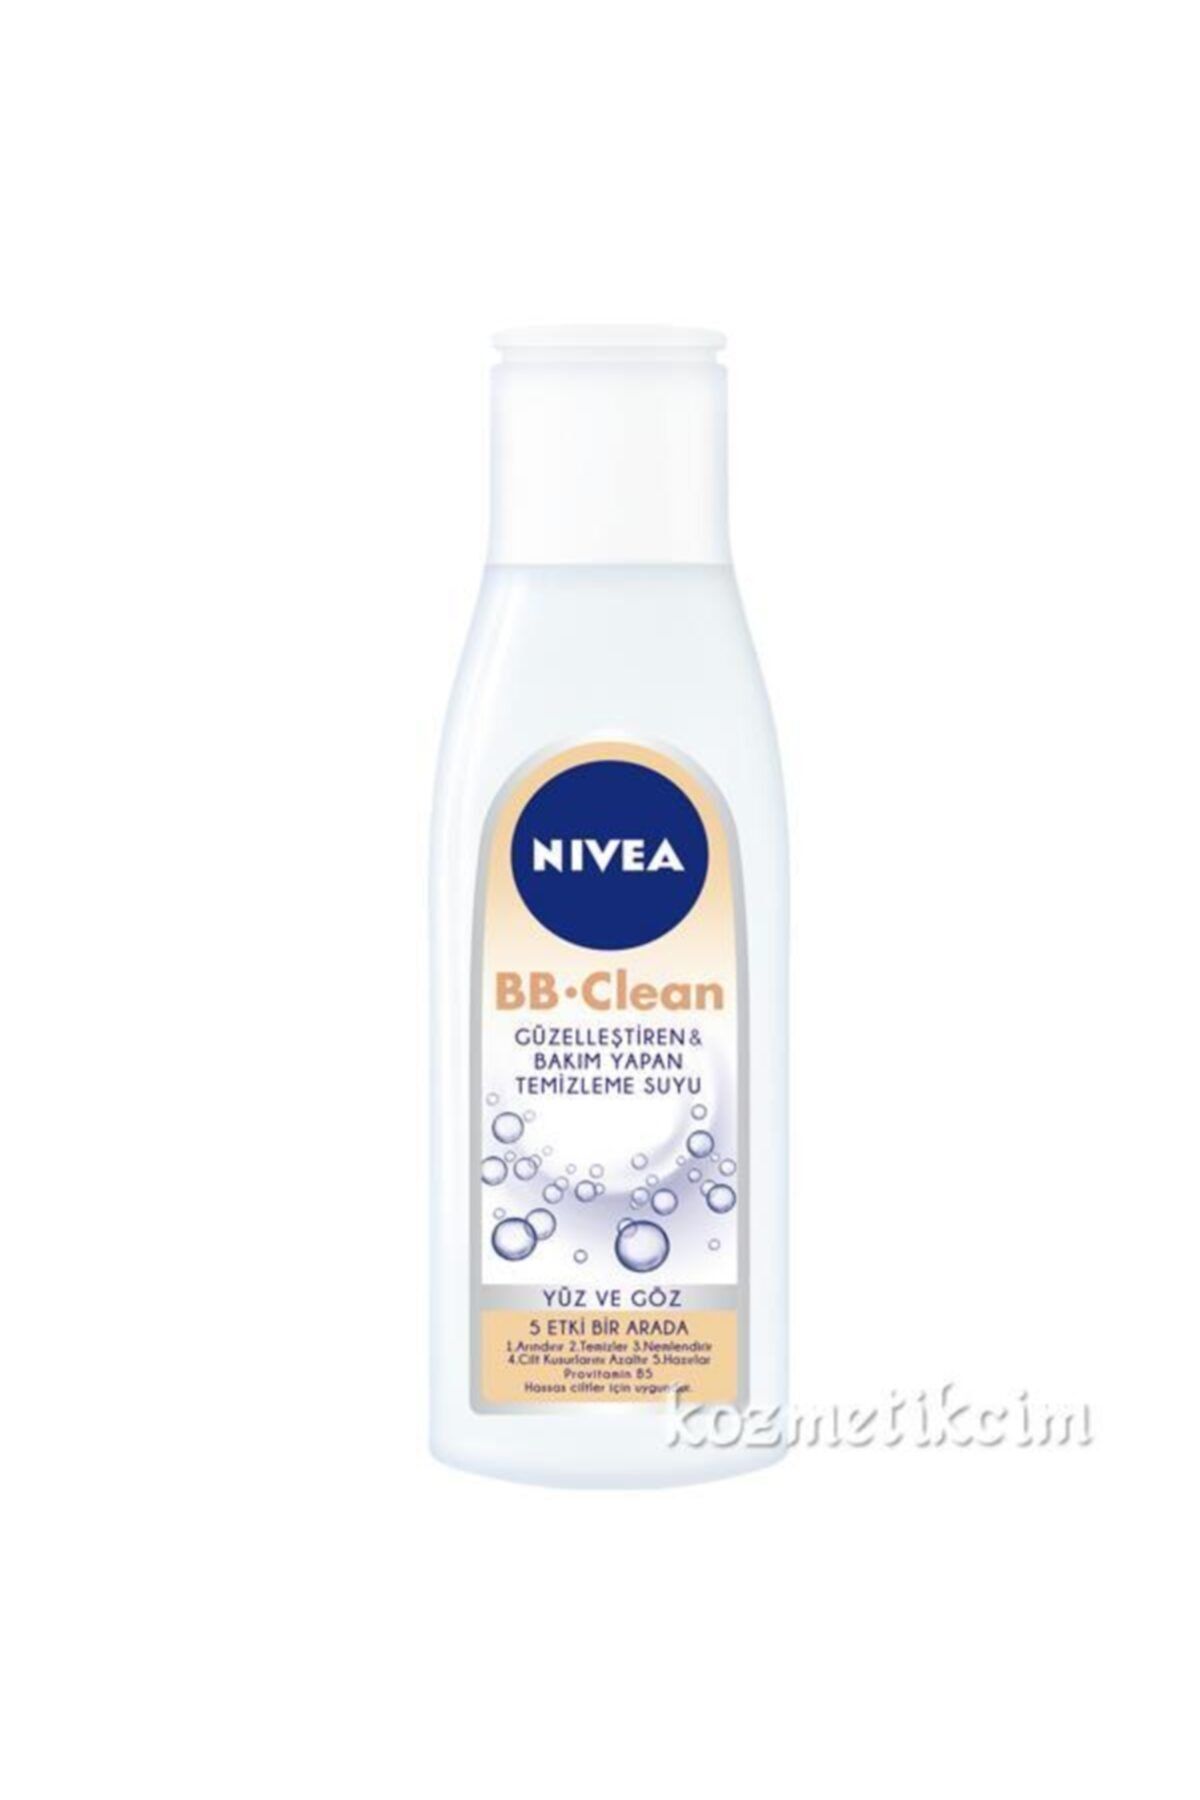 NIVEA Bb Clean 5 In1 Yüz Ve Göz Hassas Temizleme Suyu 200 ml